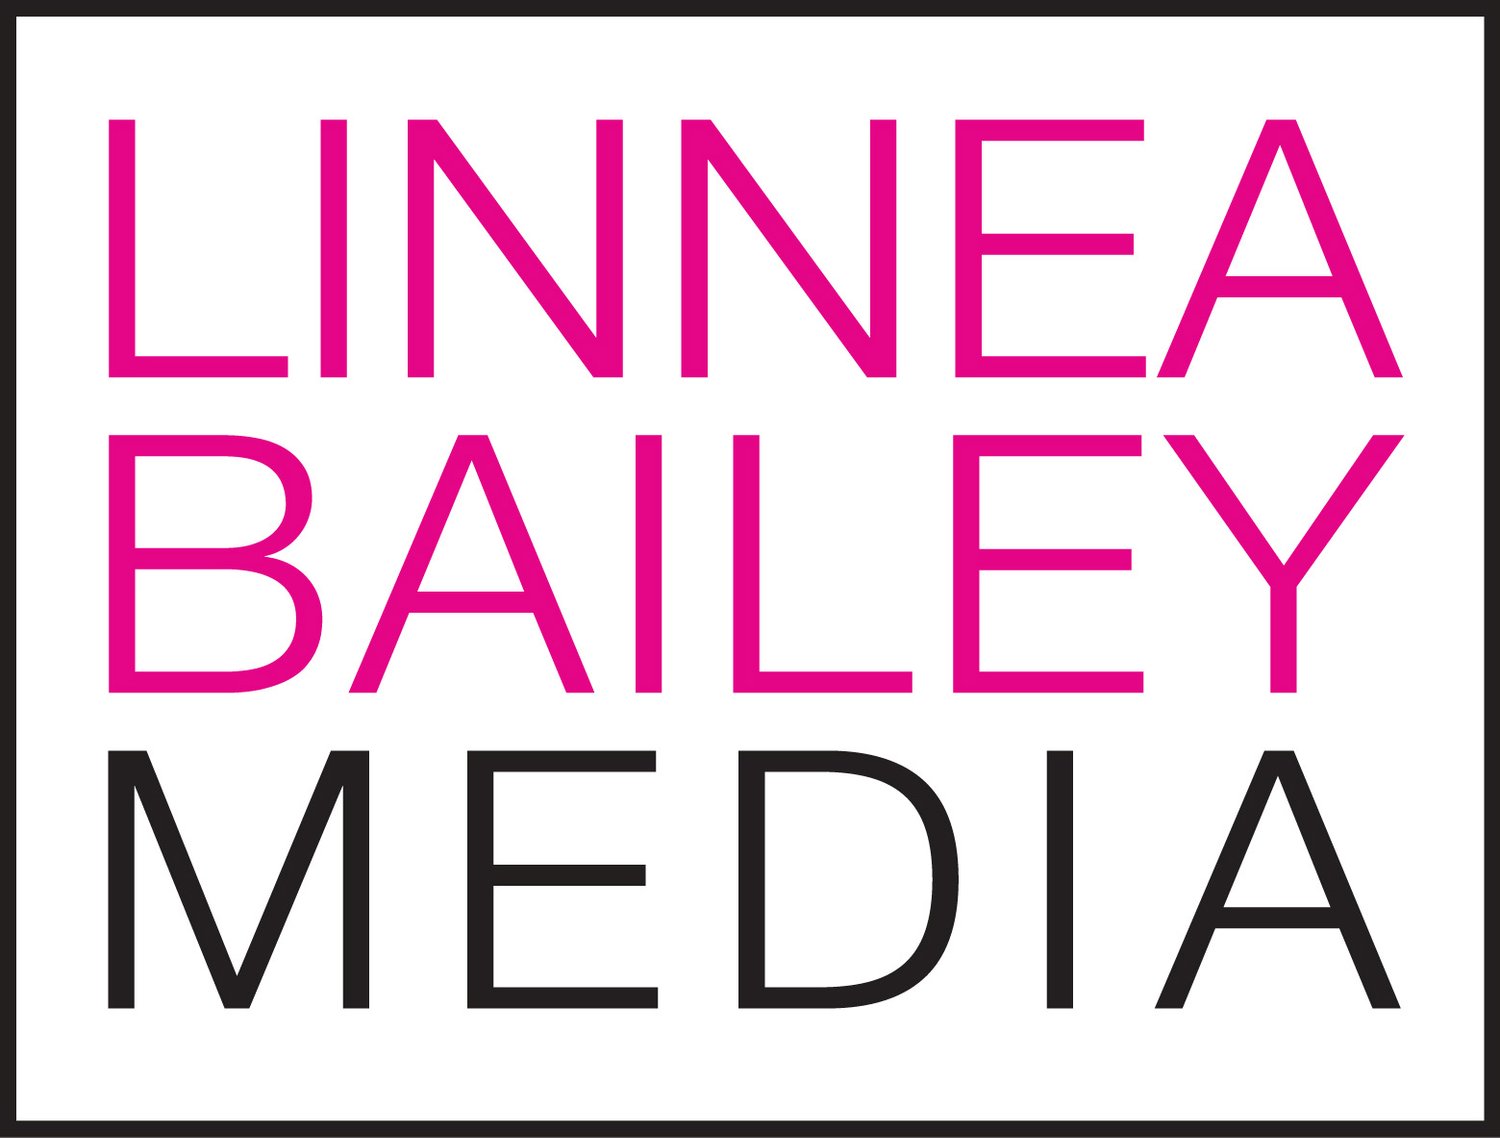 Linnea Bailey Media